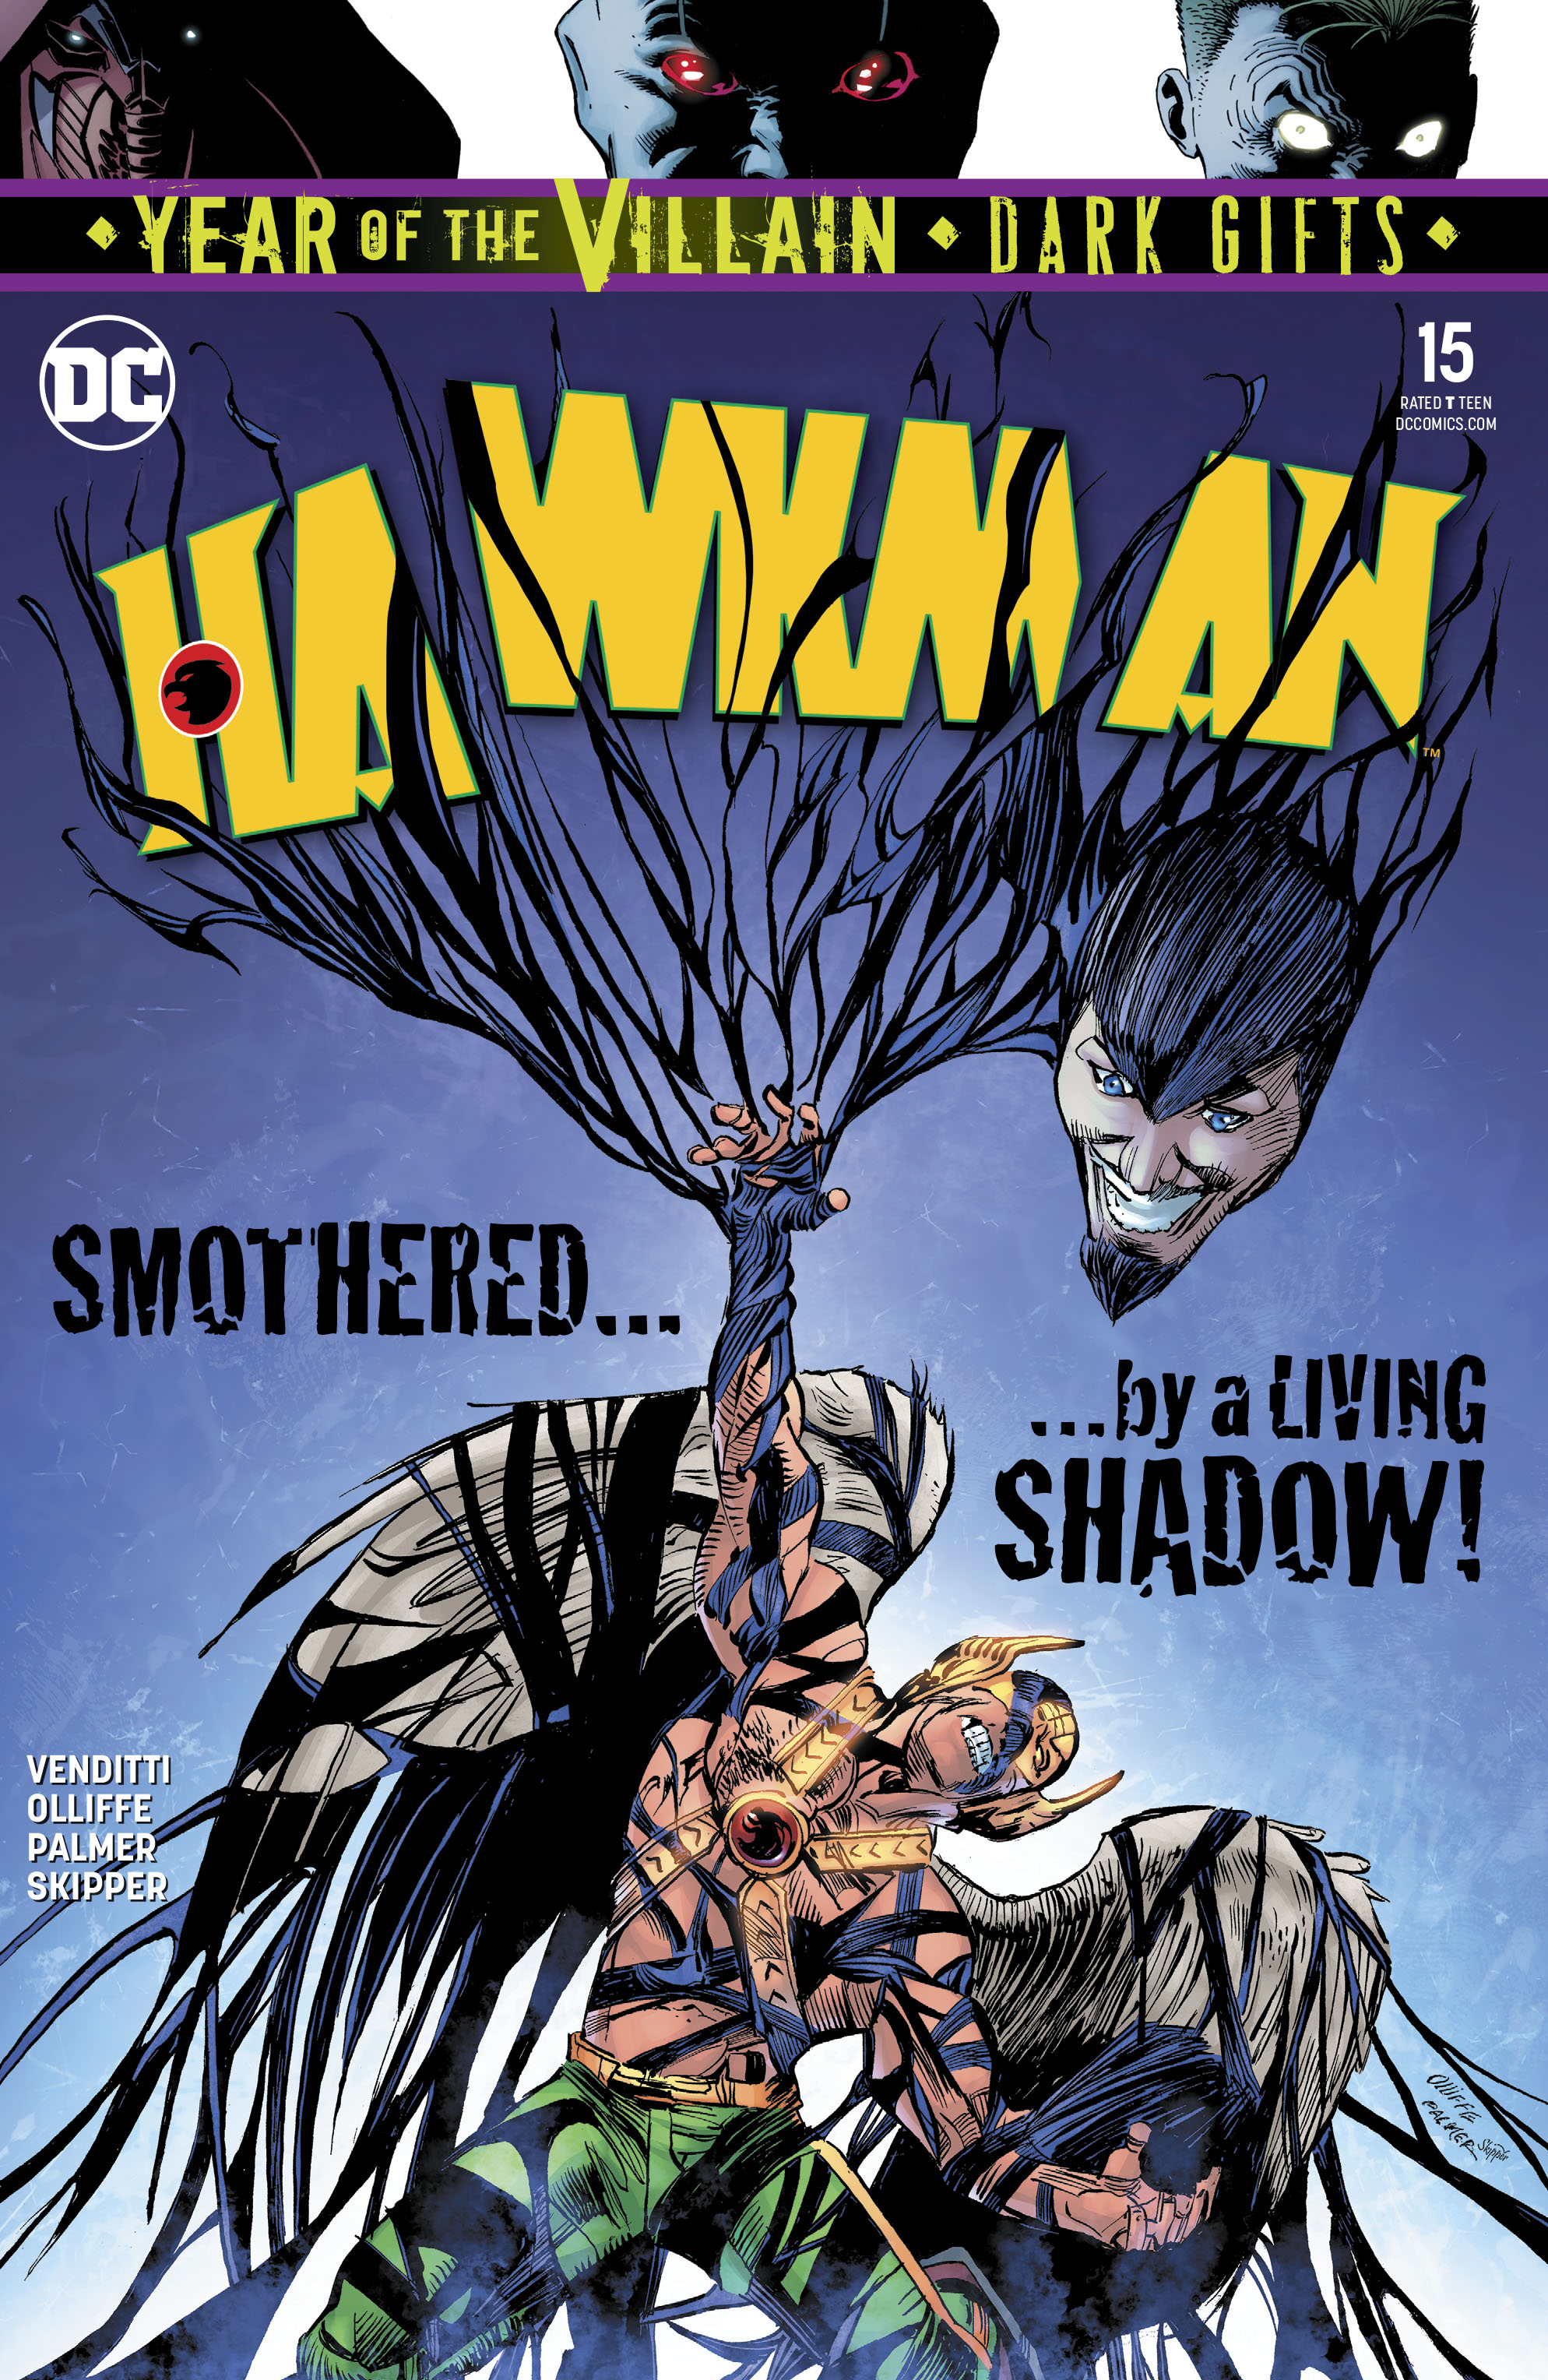 Hawkman #15 Year of the Villain Dark Gifts